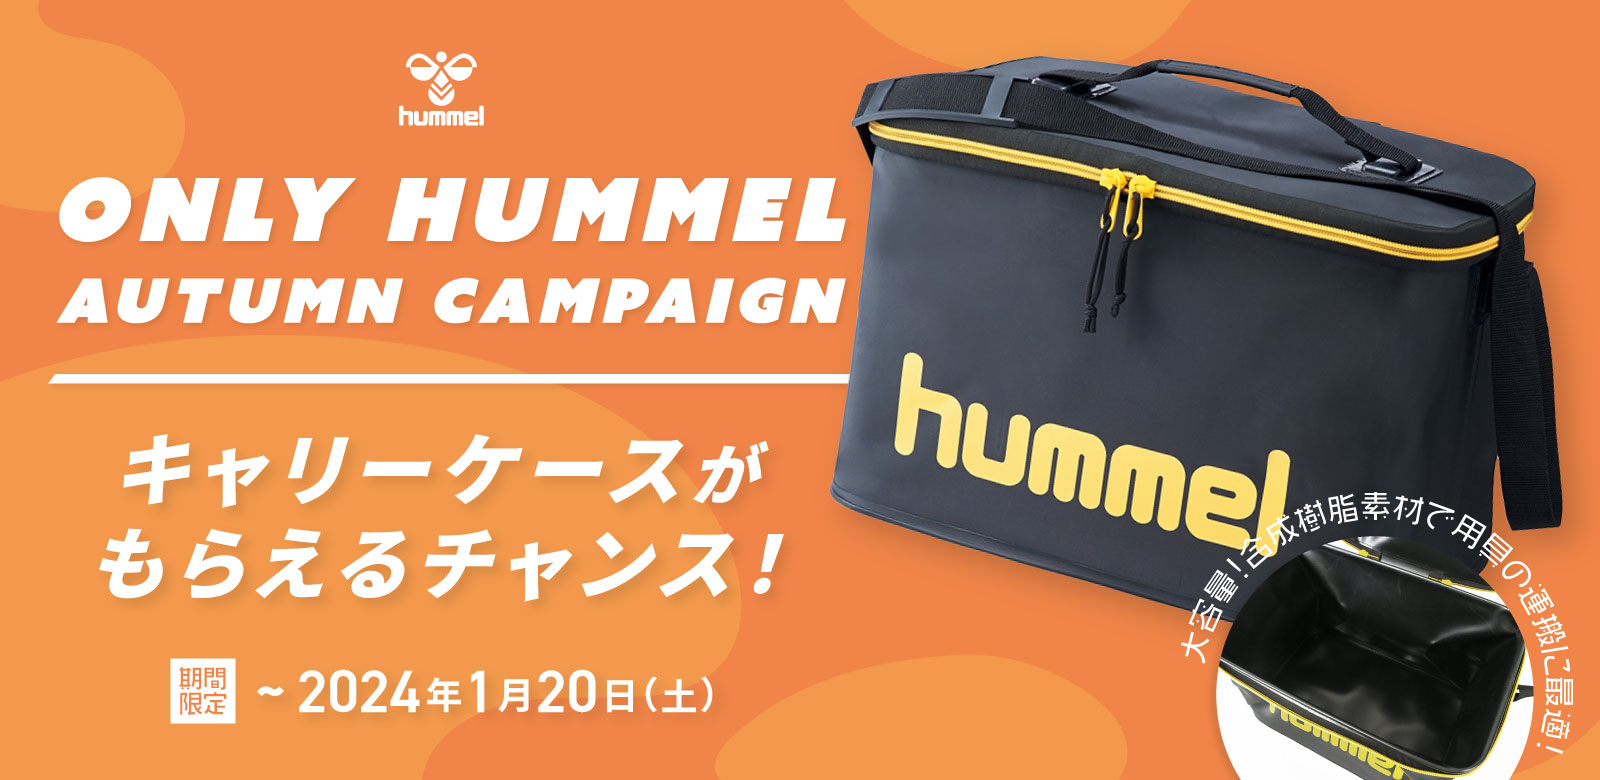 hummel 秋のTEAMキャンペーン キャリーケースをプレゼント!!